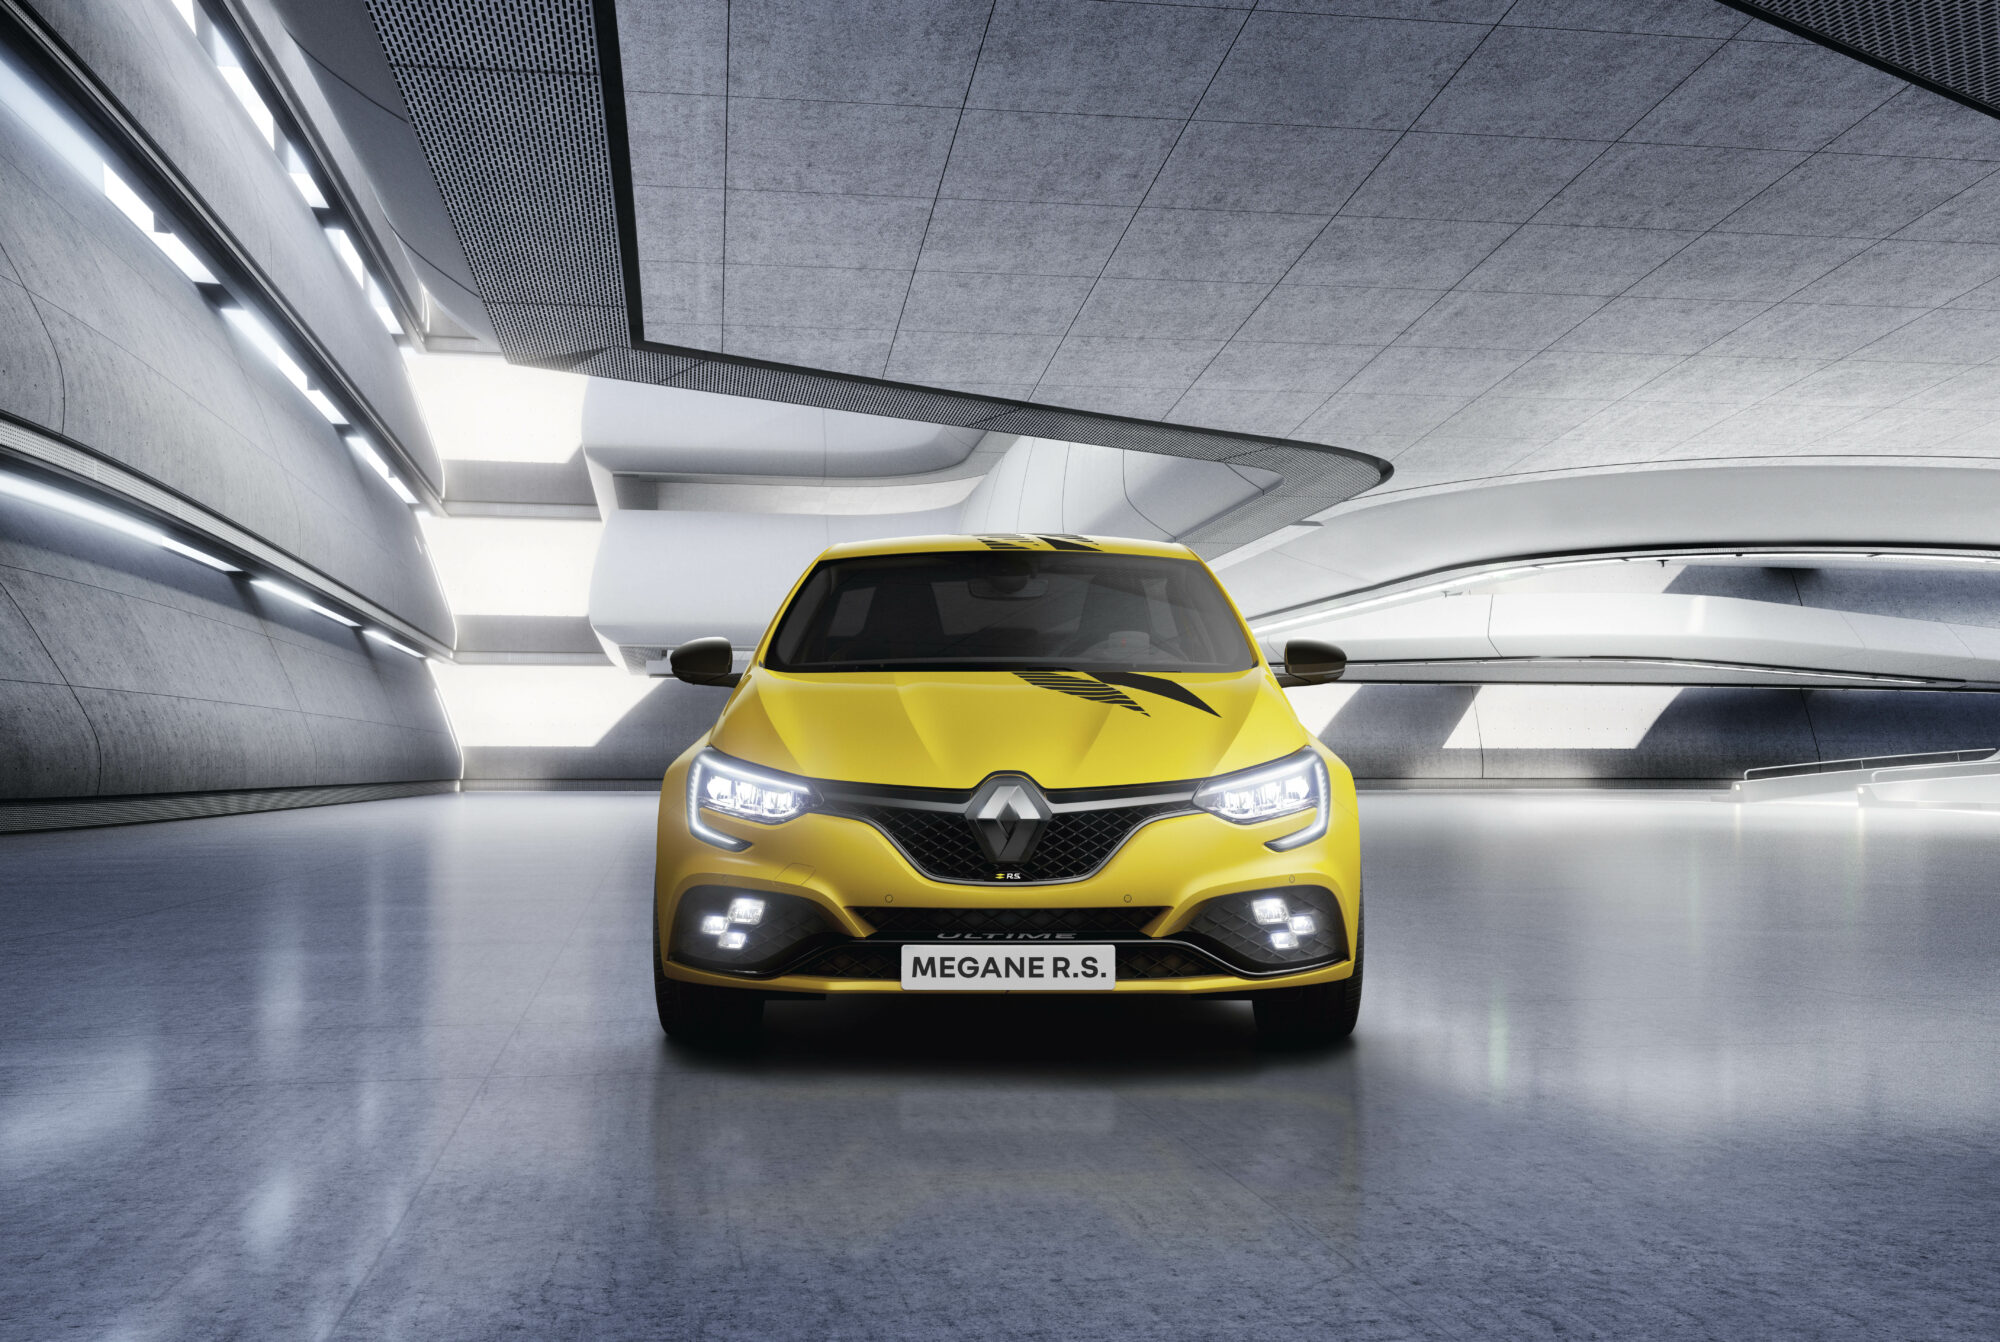 2023 - Renault Megane R.S. Ultime (31)